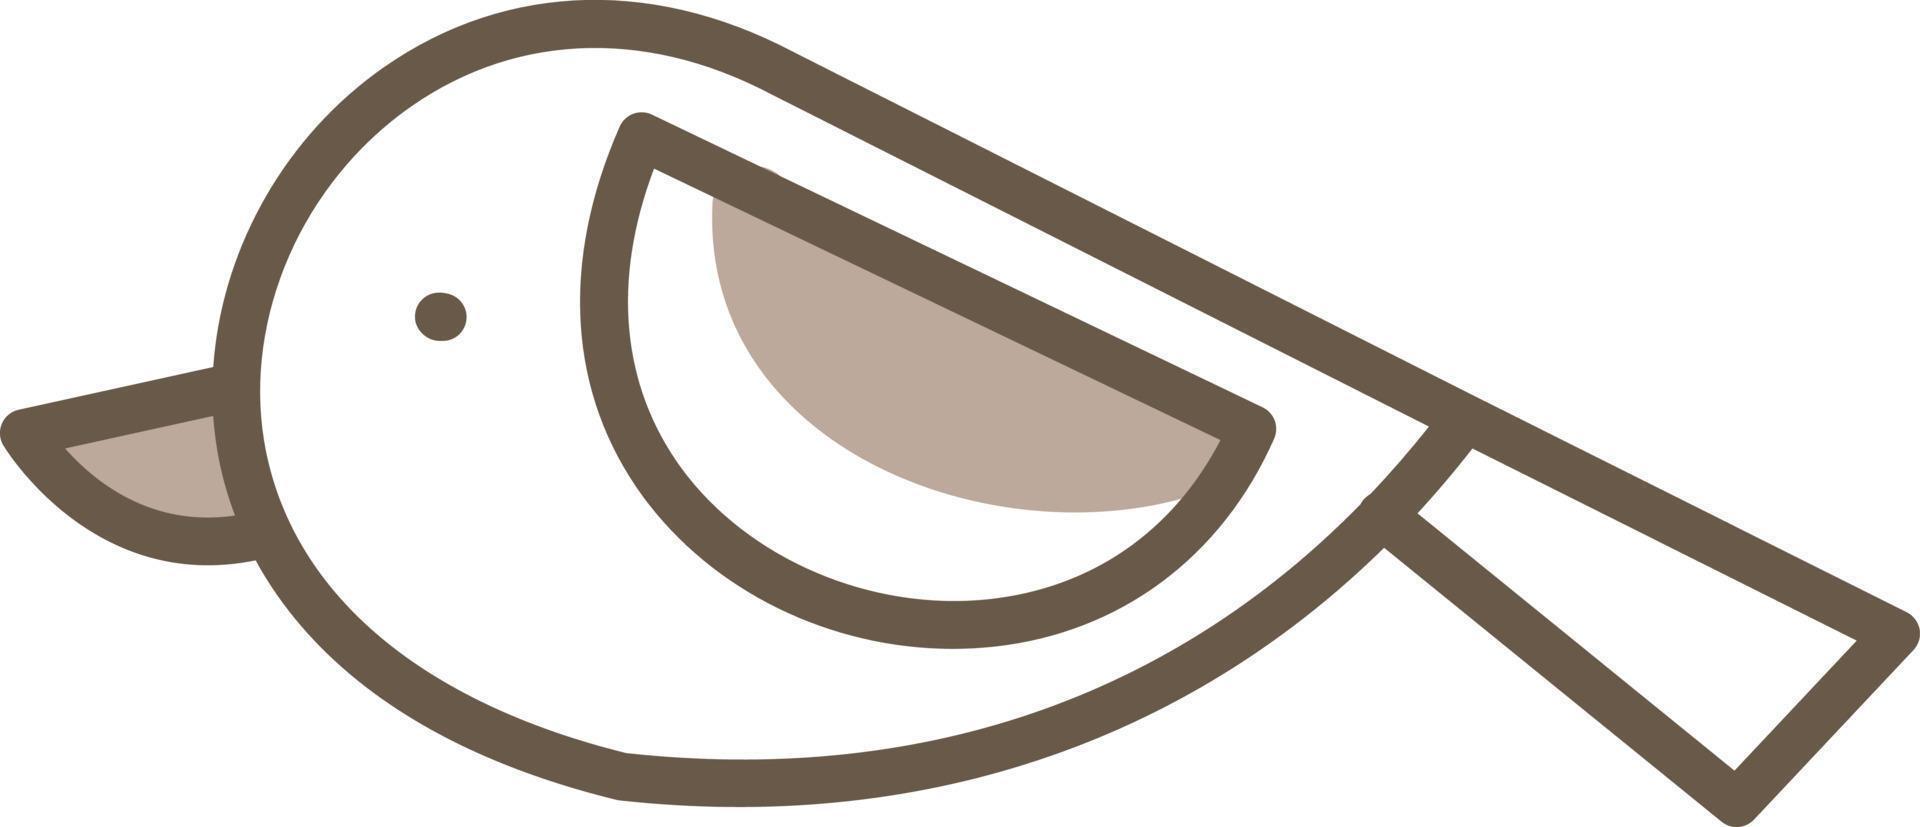 pequeño pájaro marrón, ilustración, vector sobre fondo blanco.